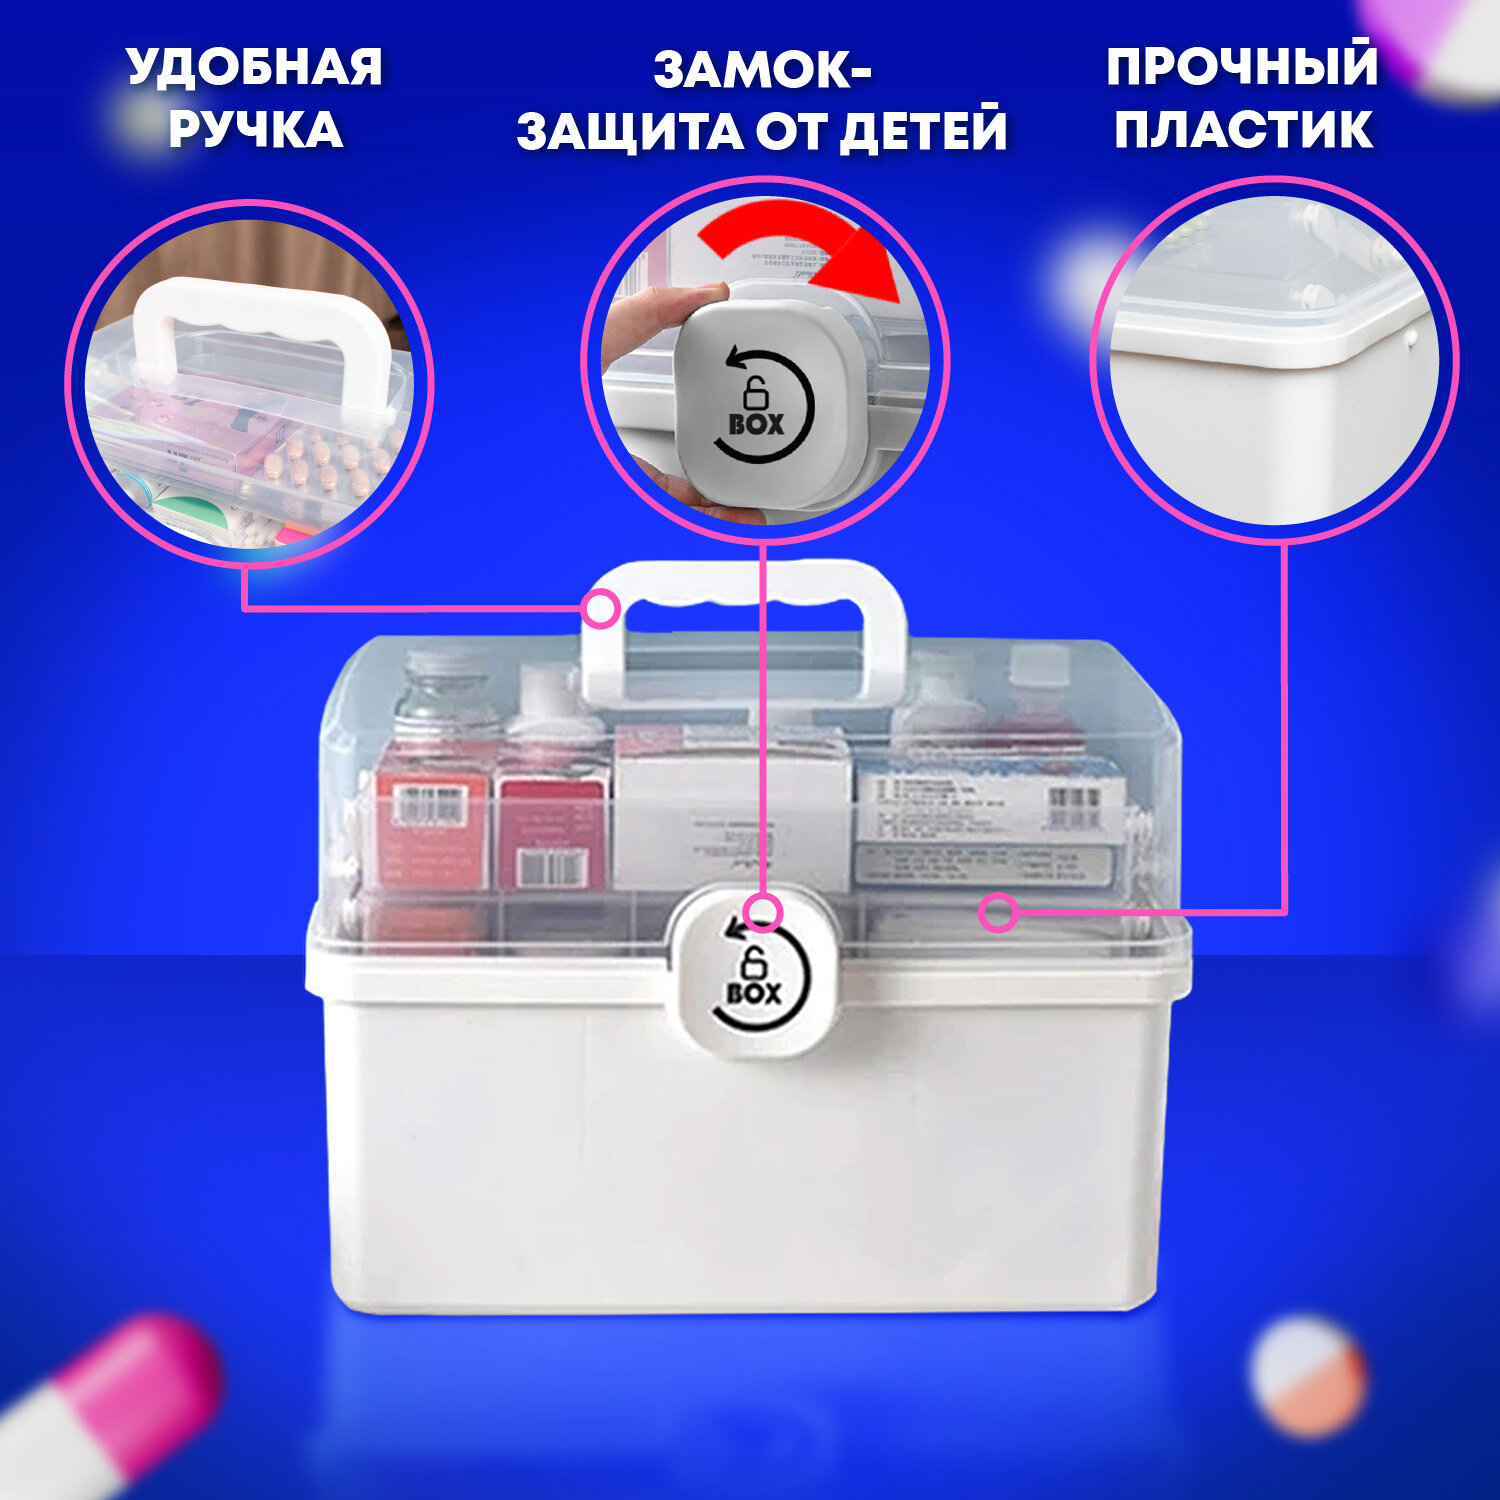 Аптечка DASWERK домашняя органайзер для хранения лекарств и витаминов - фото 4